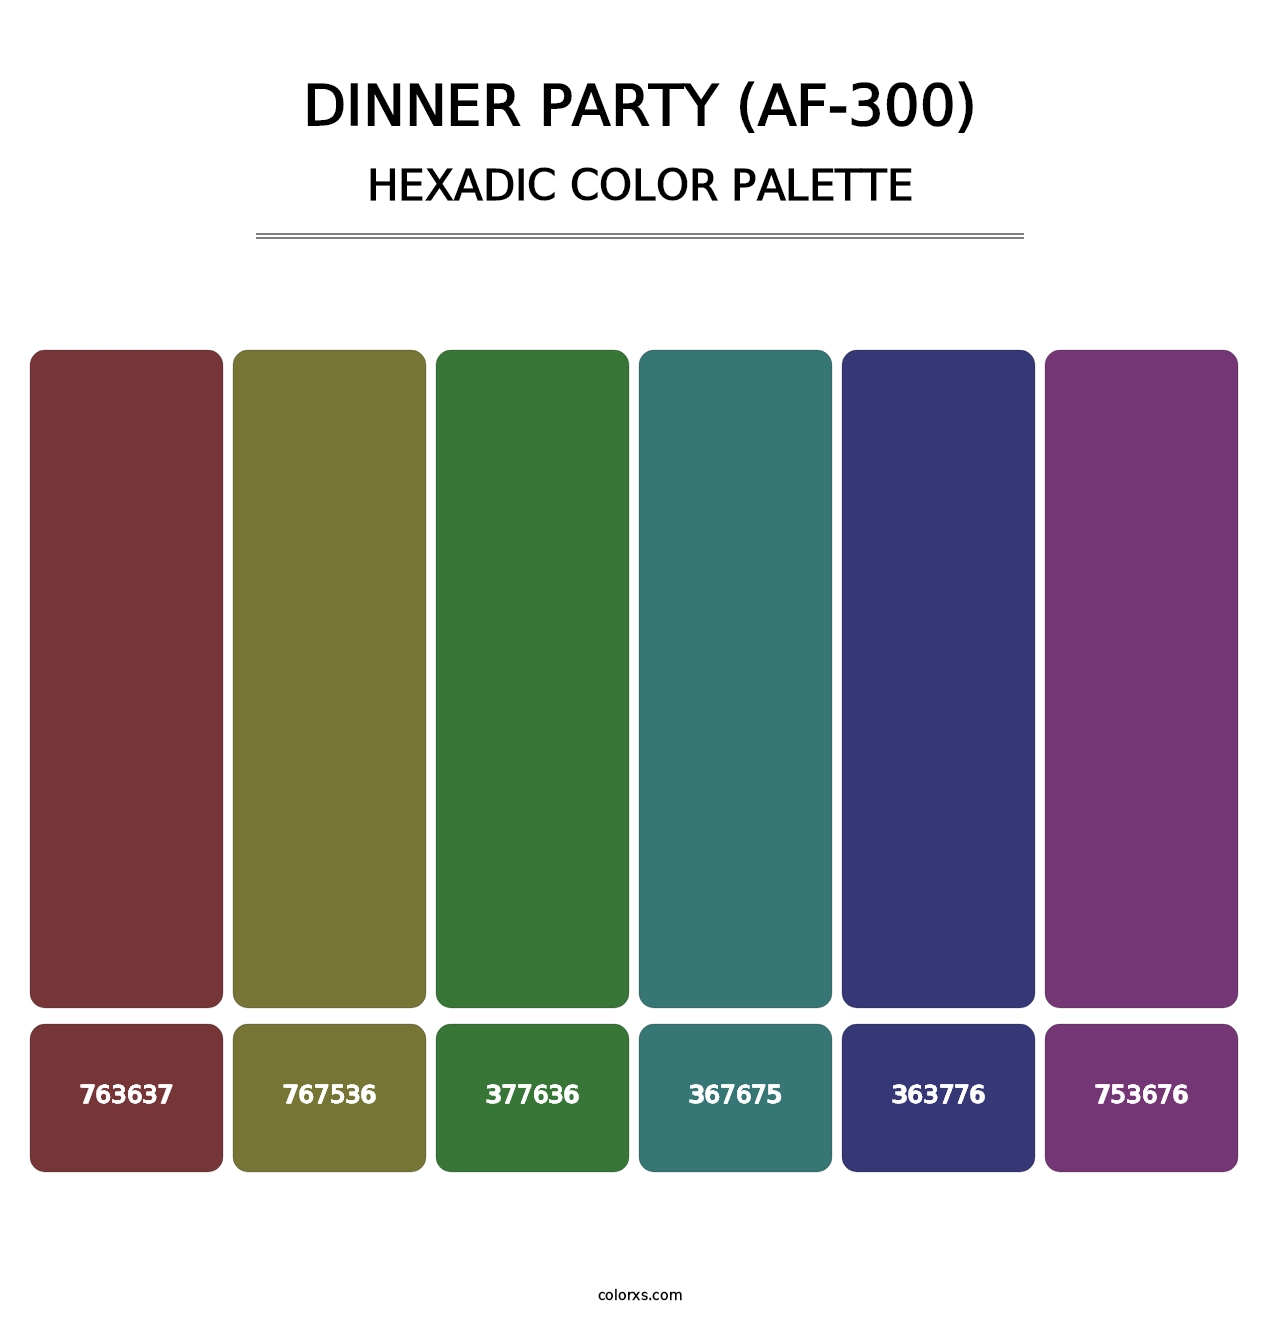 Dinner Party (AF-300) - Hexadic Color Palette